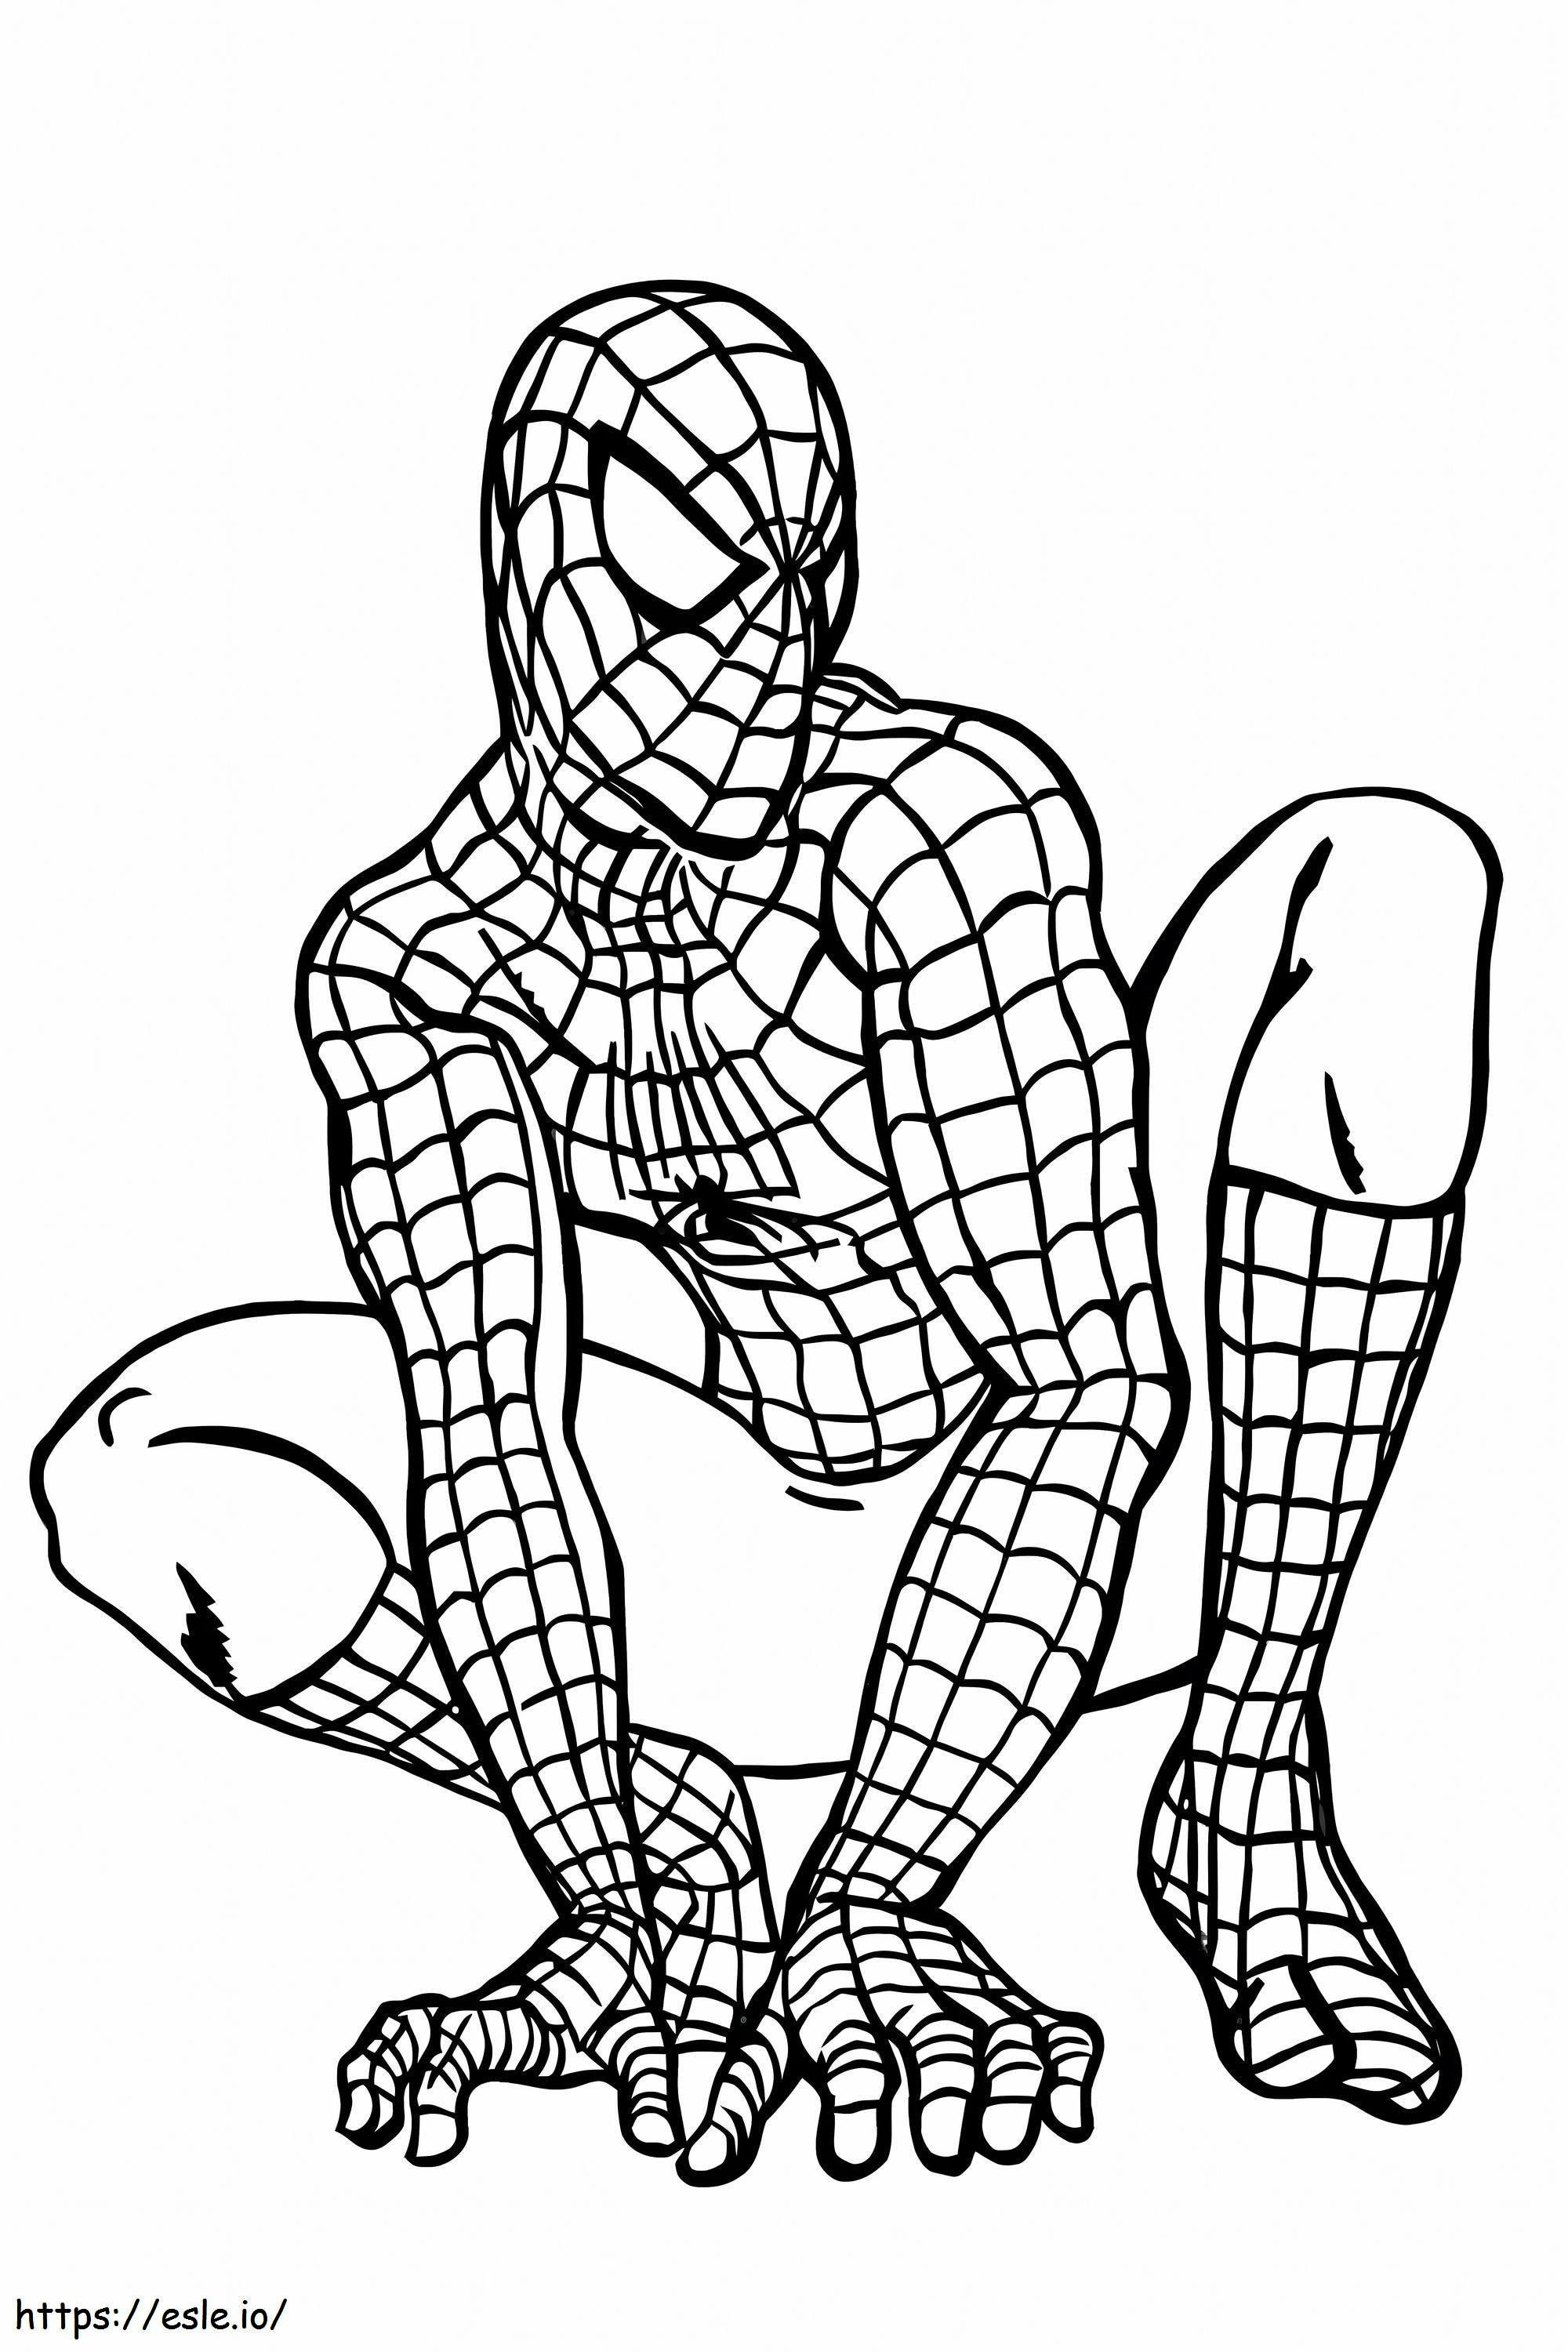 Big Spider Man coloring page